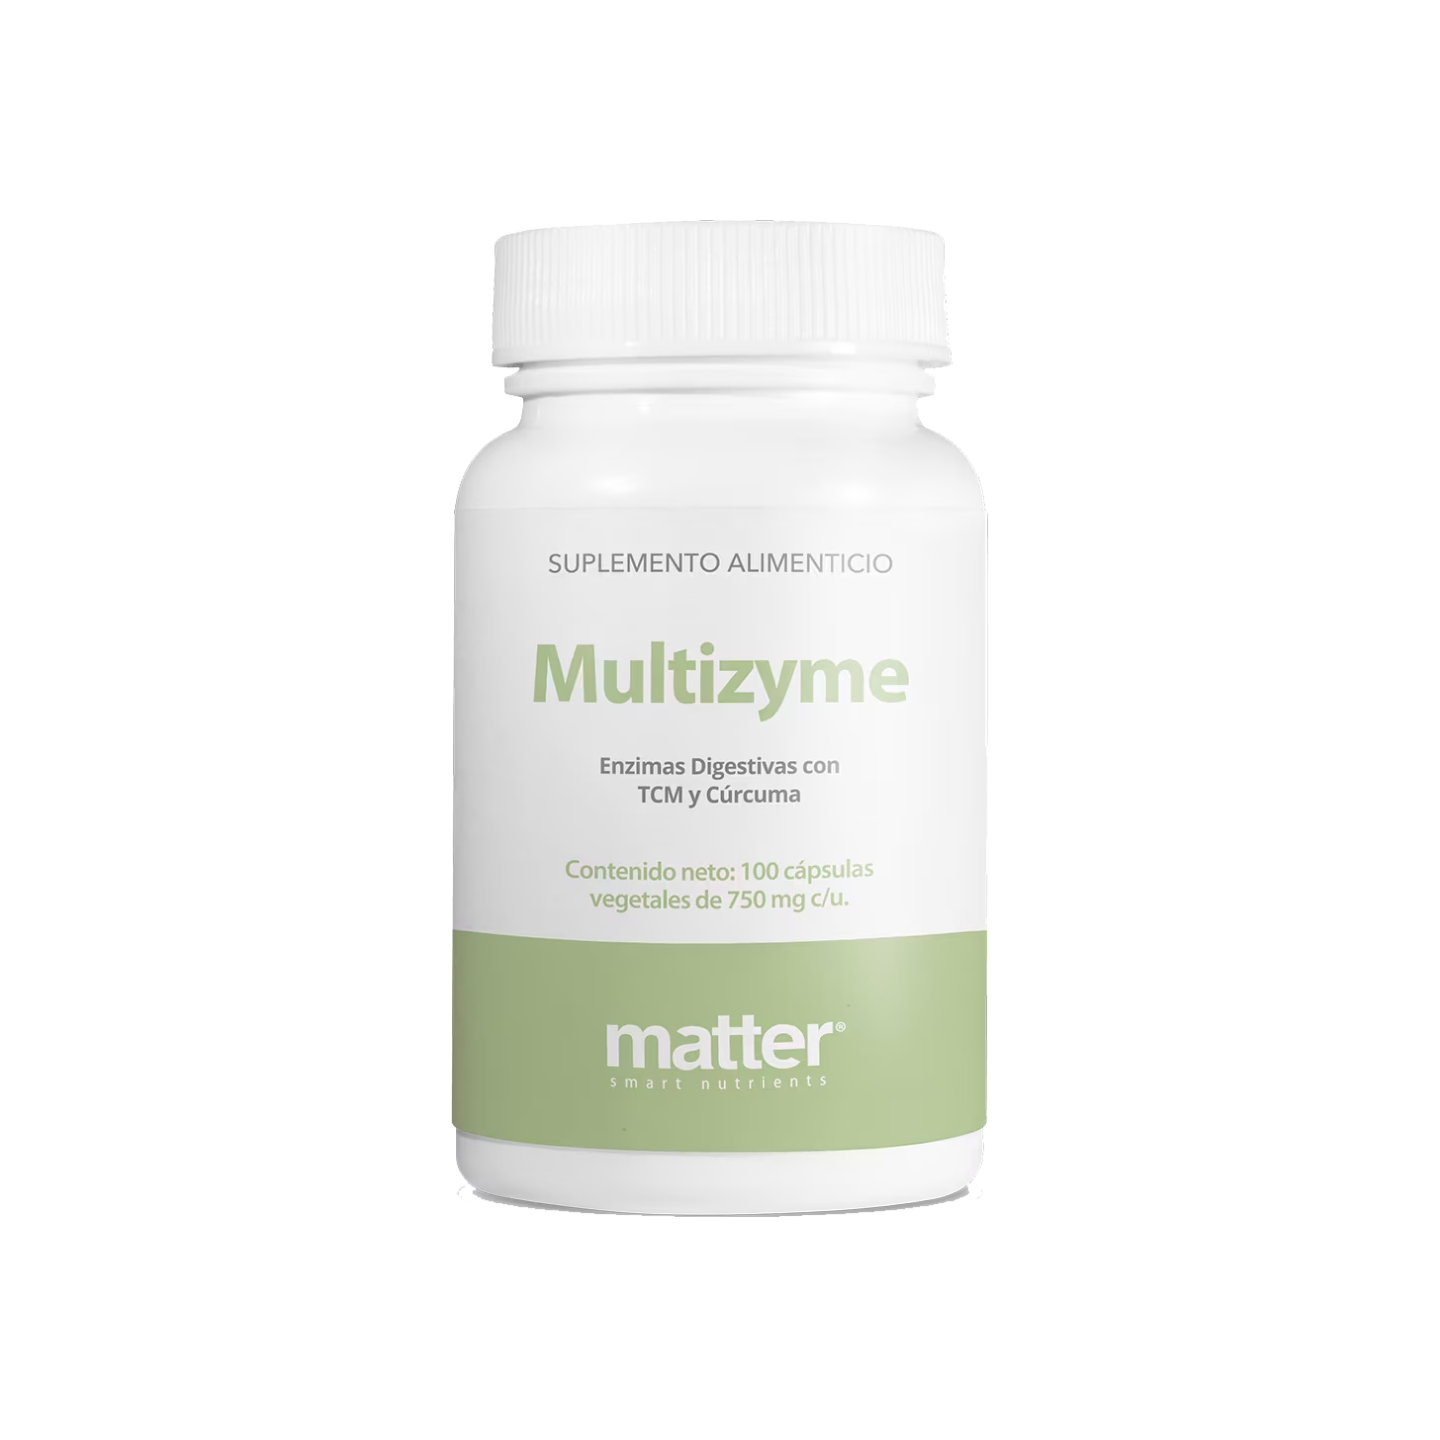 Multizyme - Enzimas Digestivas con Inulina y Cúrcuma